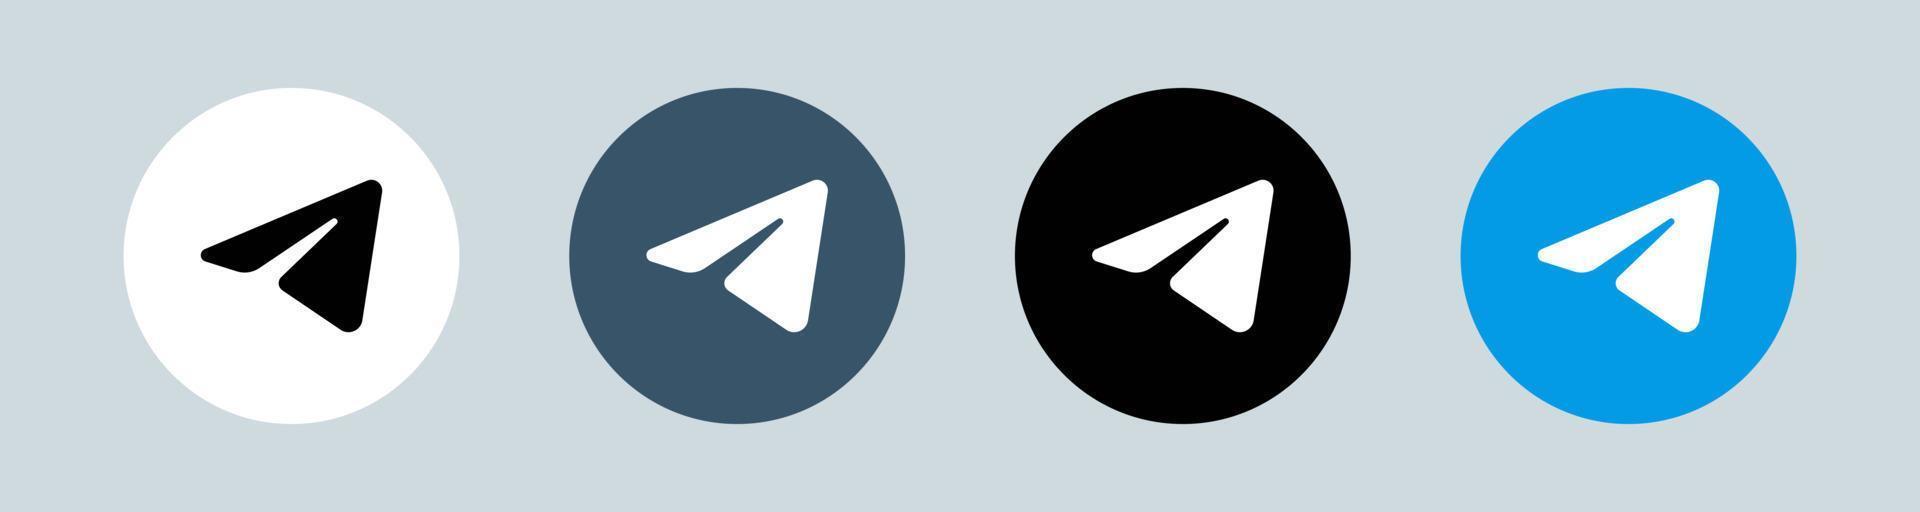 logotipo do telegrama em círculo. ilustração em vetor logotipo aplicativo de mensagens popular.